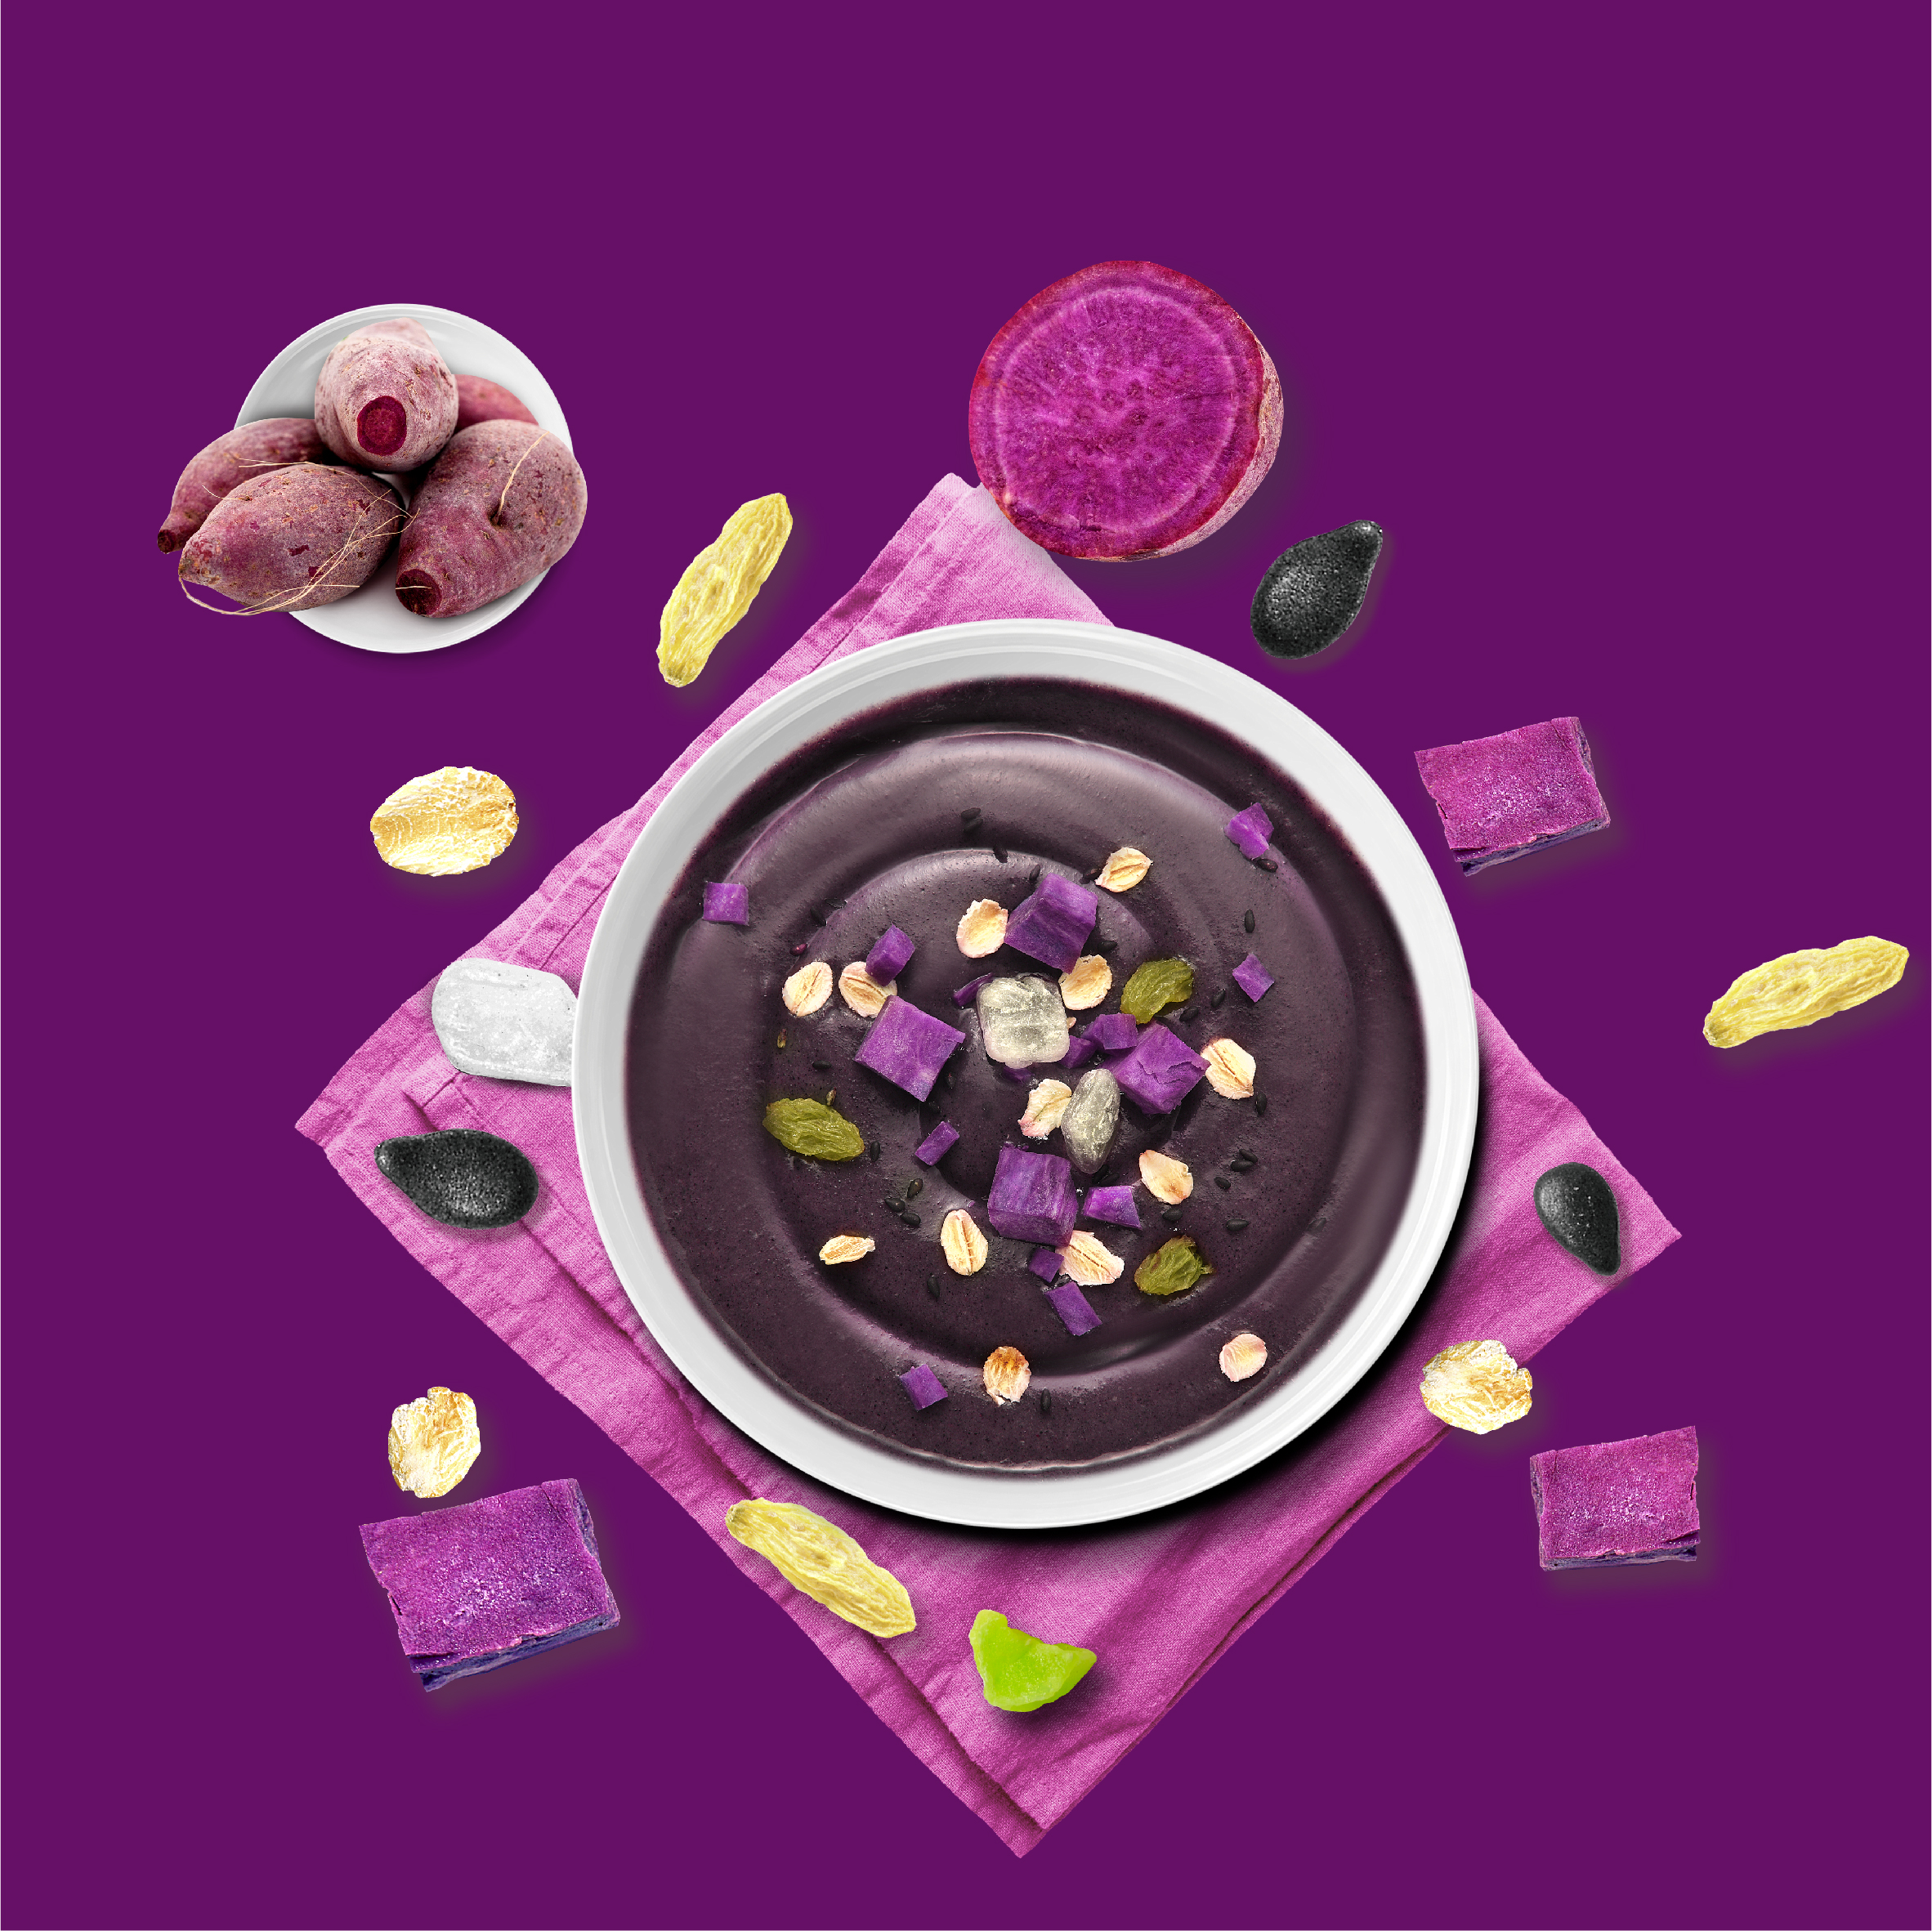 紫薯魔芋代餐粉